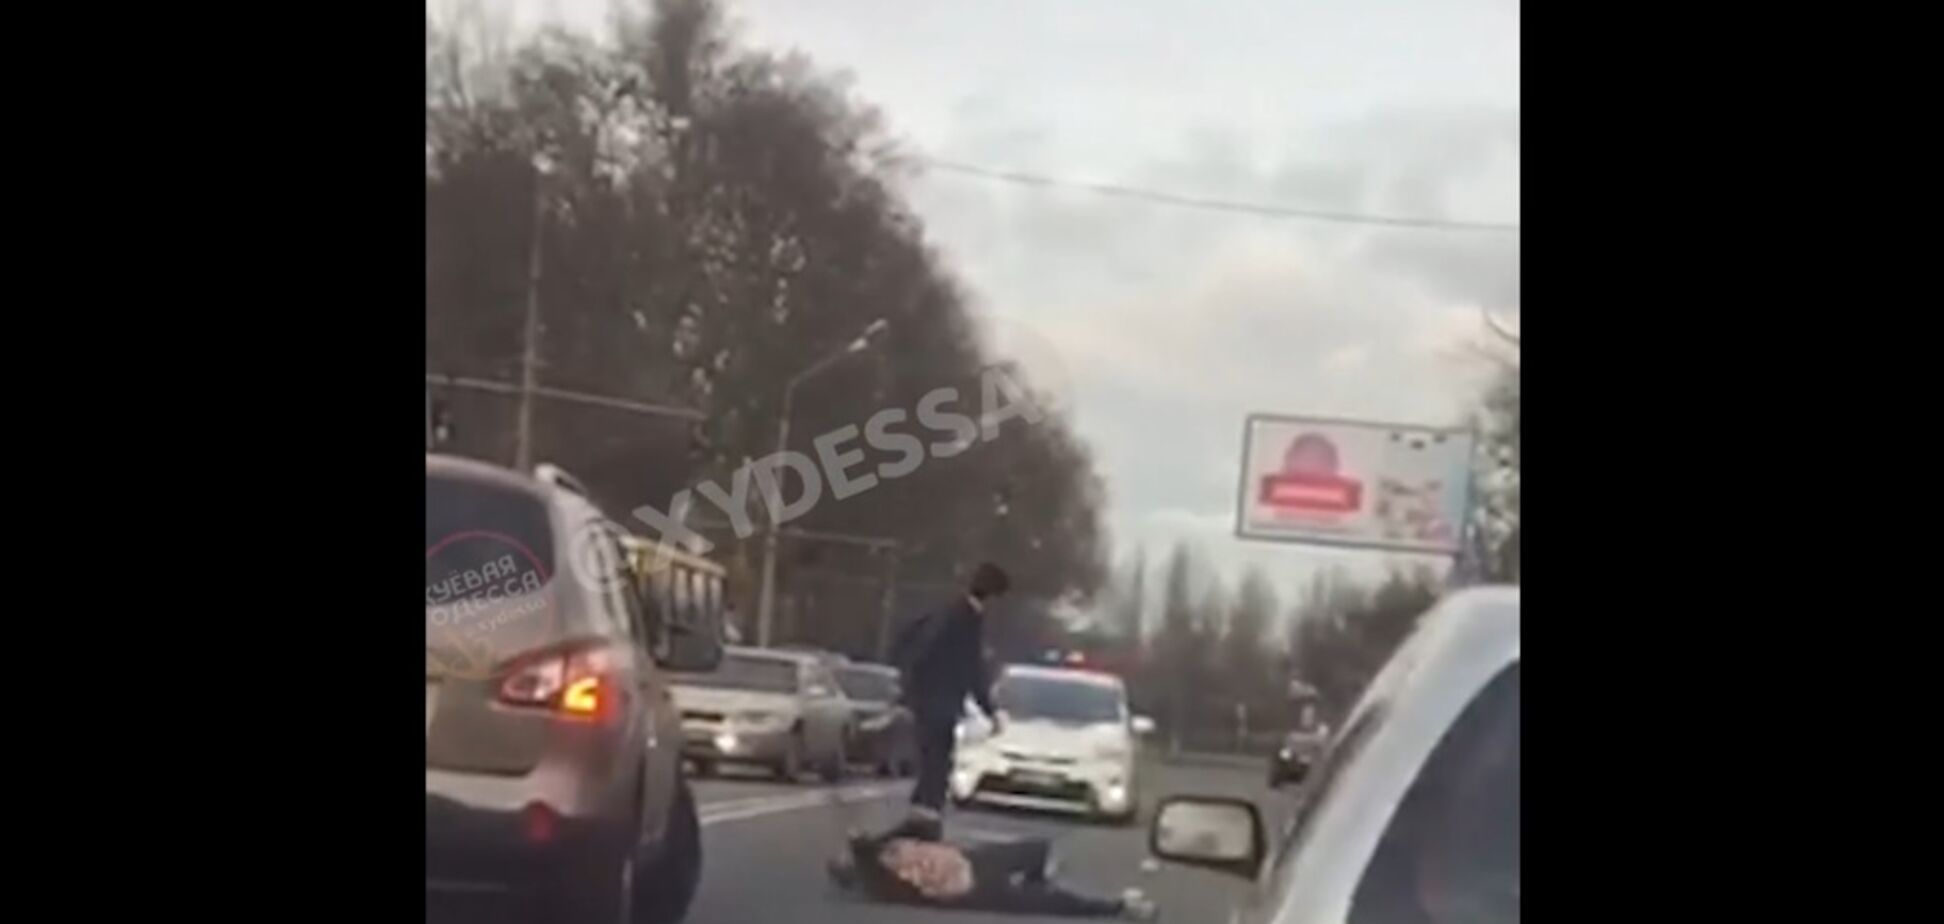  В Одессе парень под наркотиками бросился под авто: в сеть попало видео